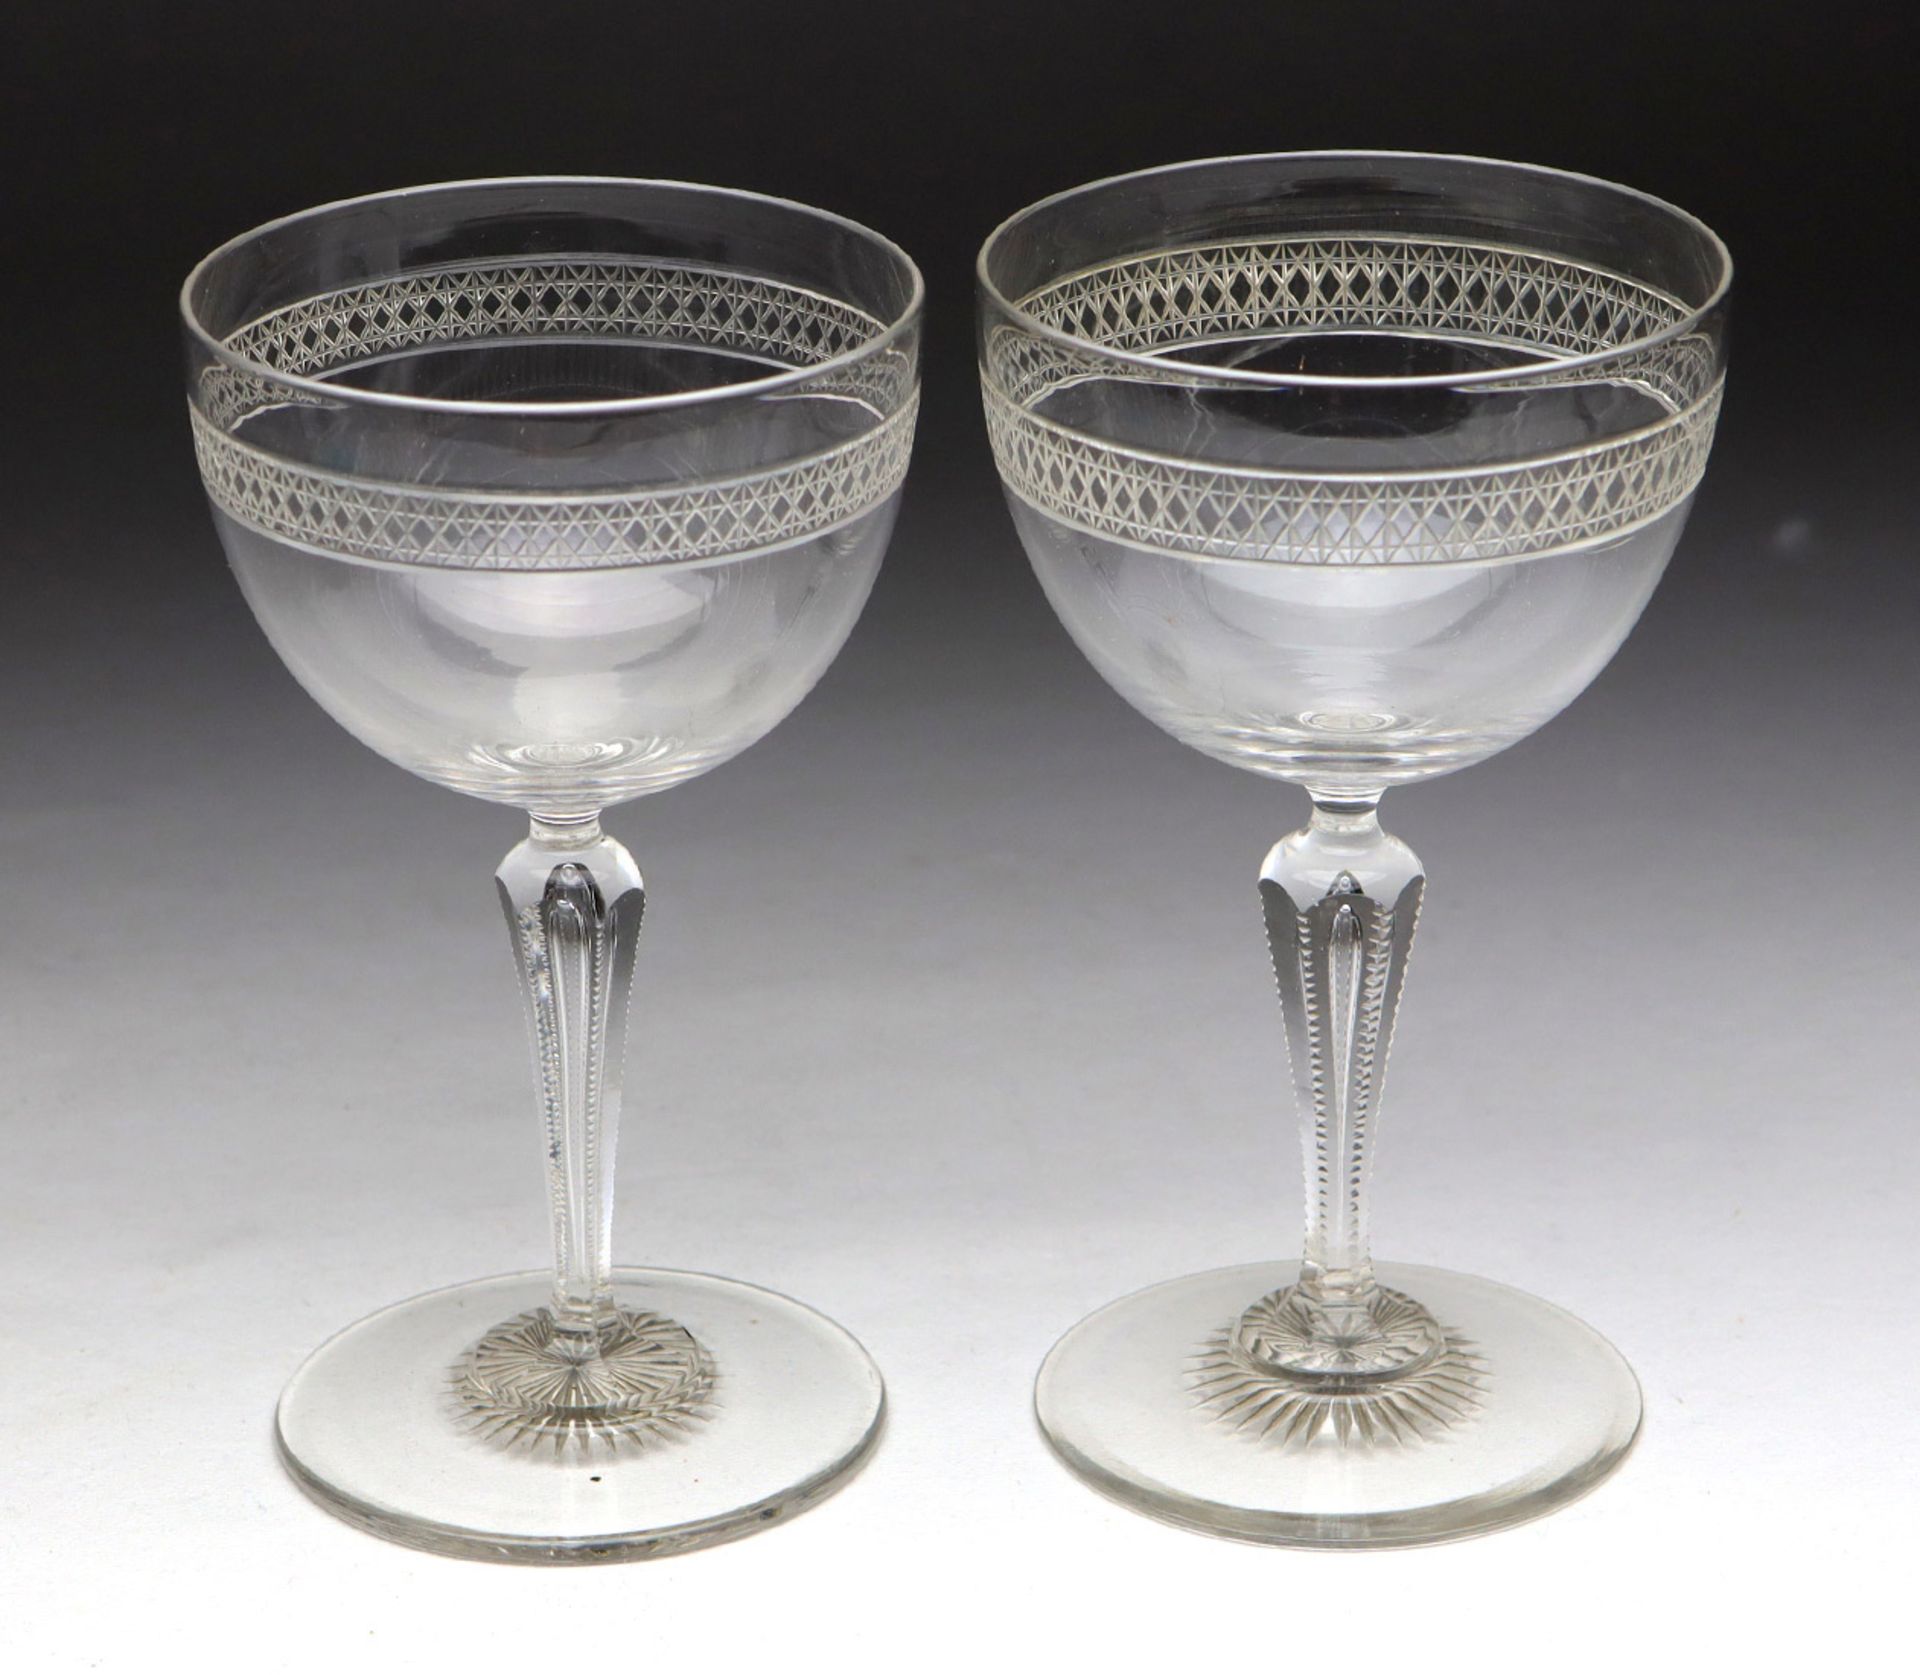 beschliffenes Kelchpaar 1920er Jahrefarbloses Glas mundgeblasen, bauchige Kuppa mit umlaufendem